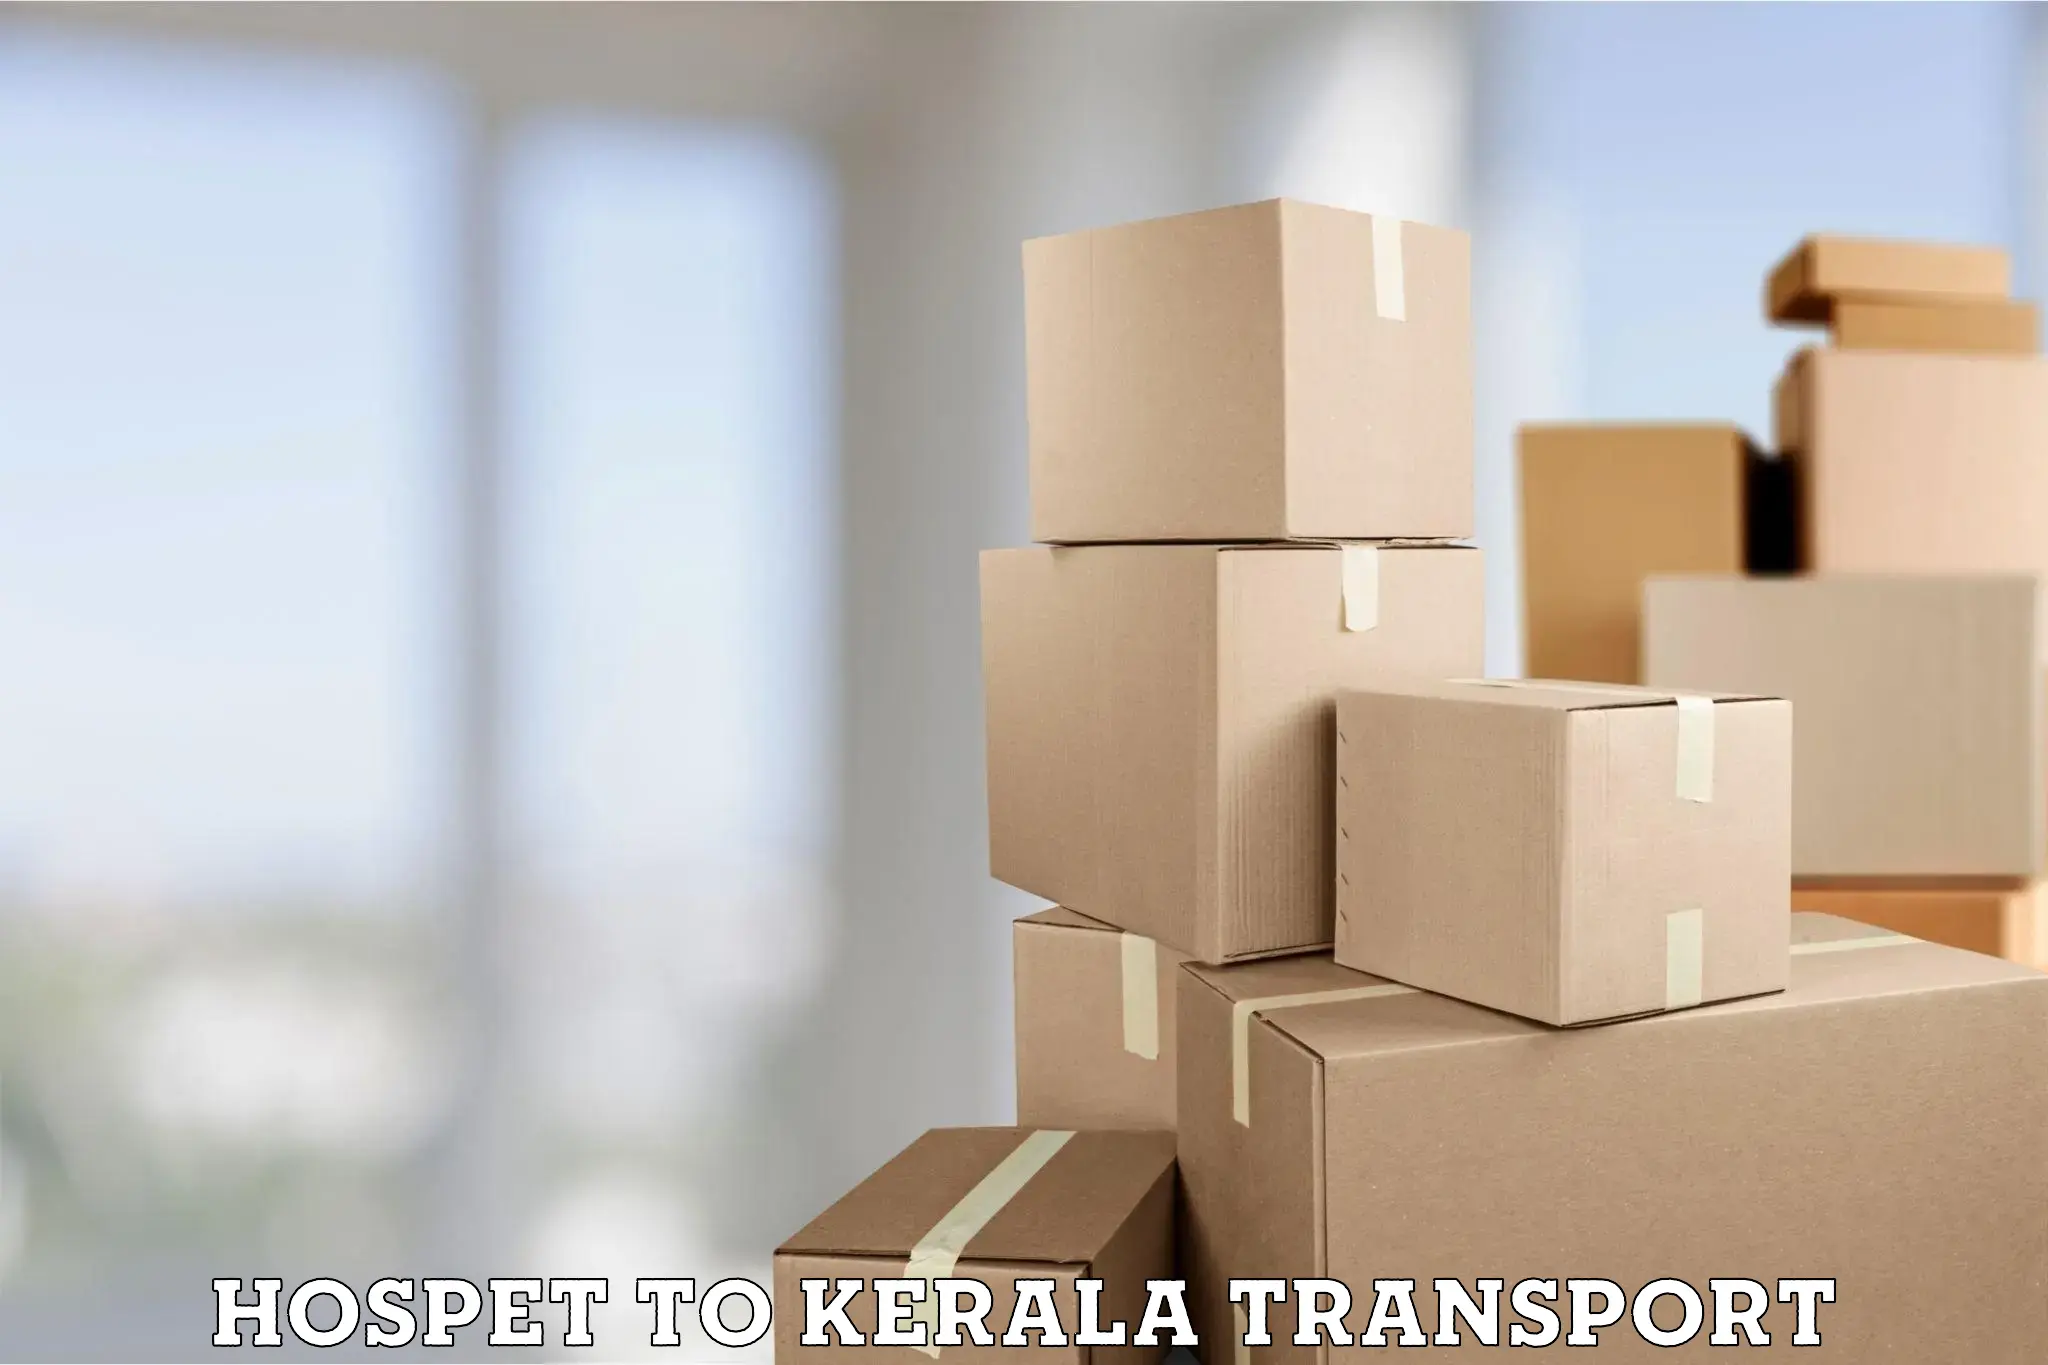 Transport services Hospet to Kozhikode